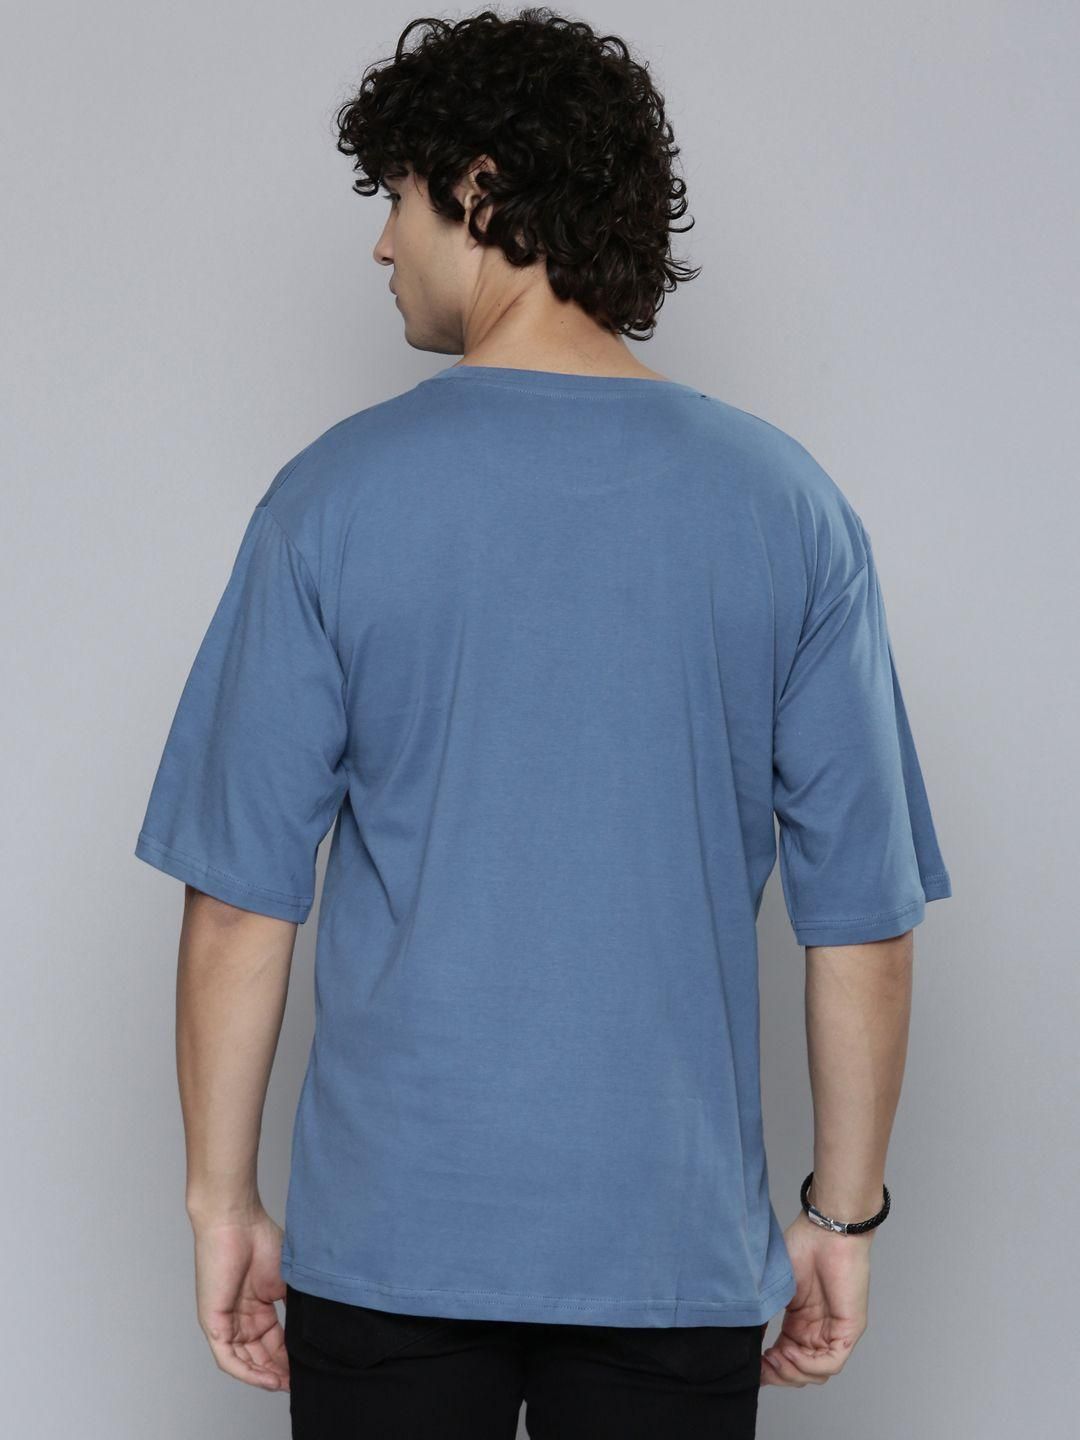 Men's Round Neck 3/4 Sleeve T-shirt